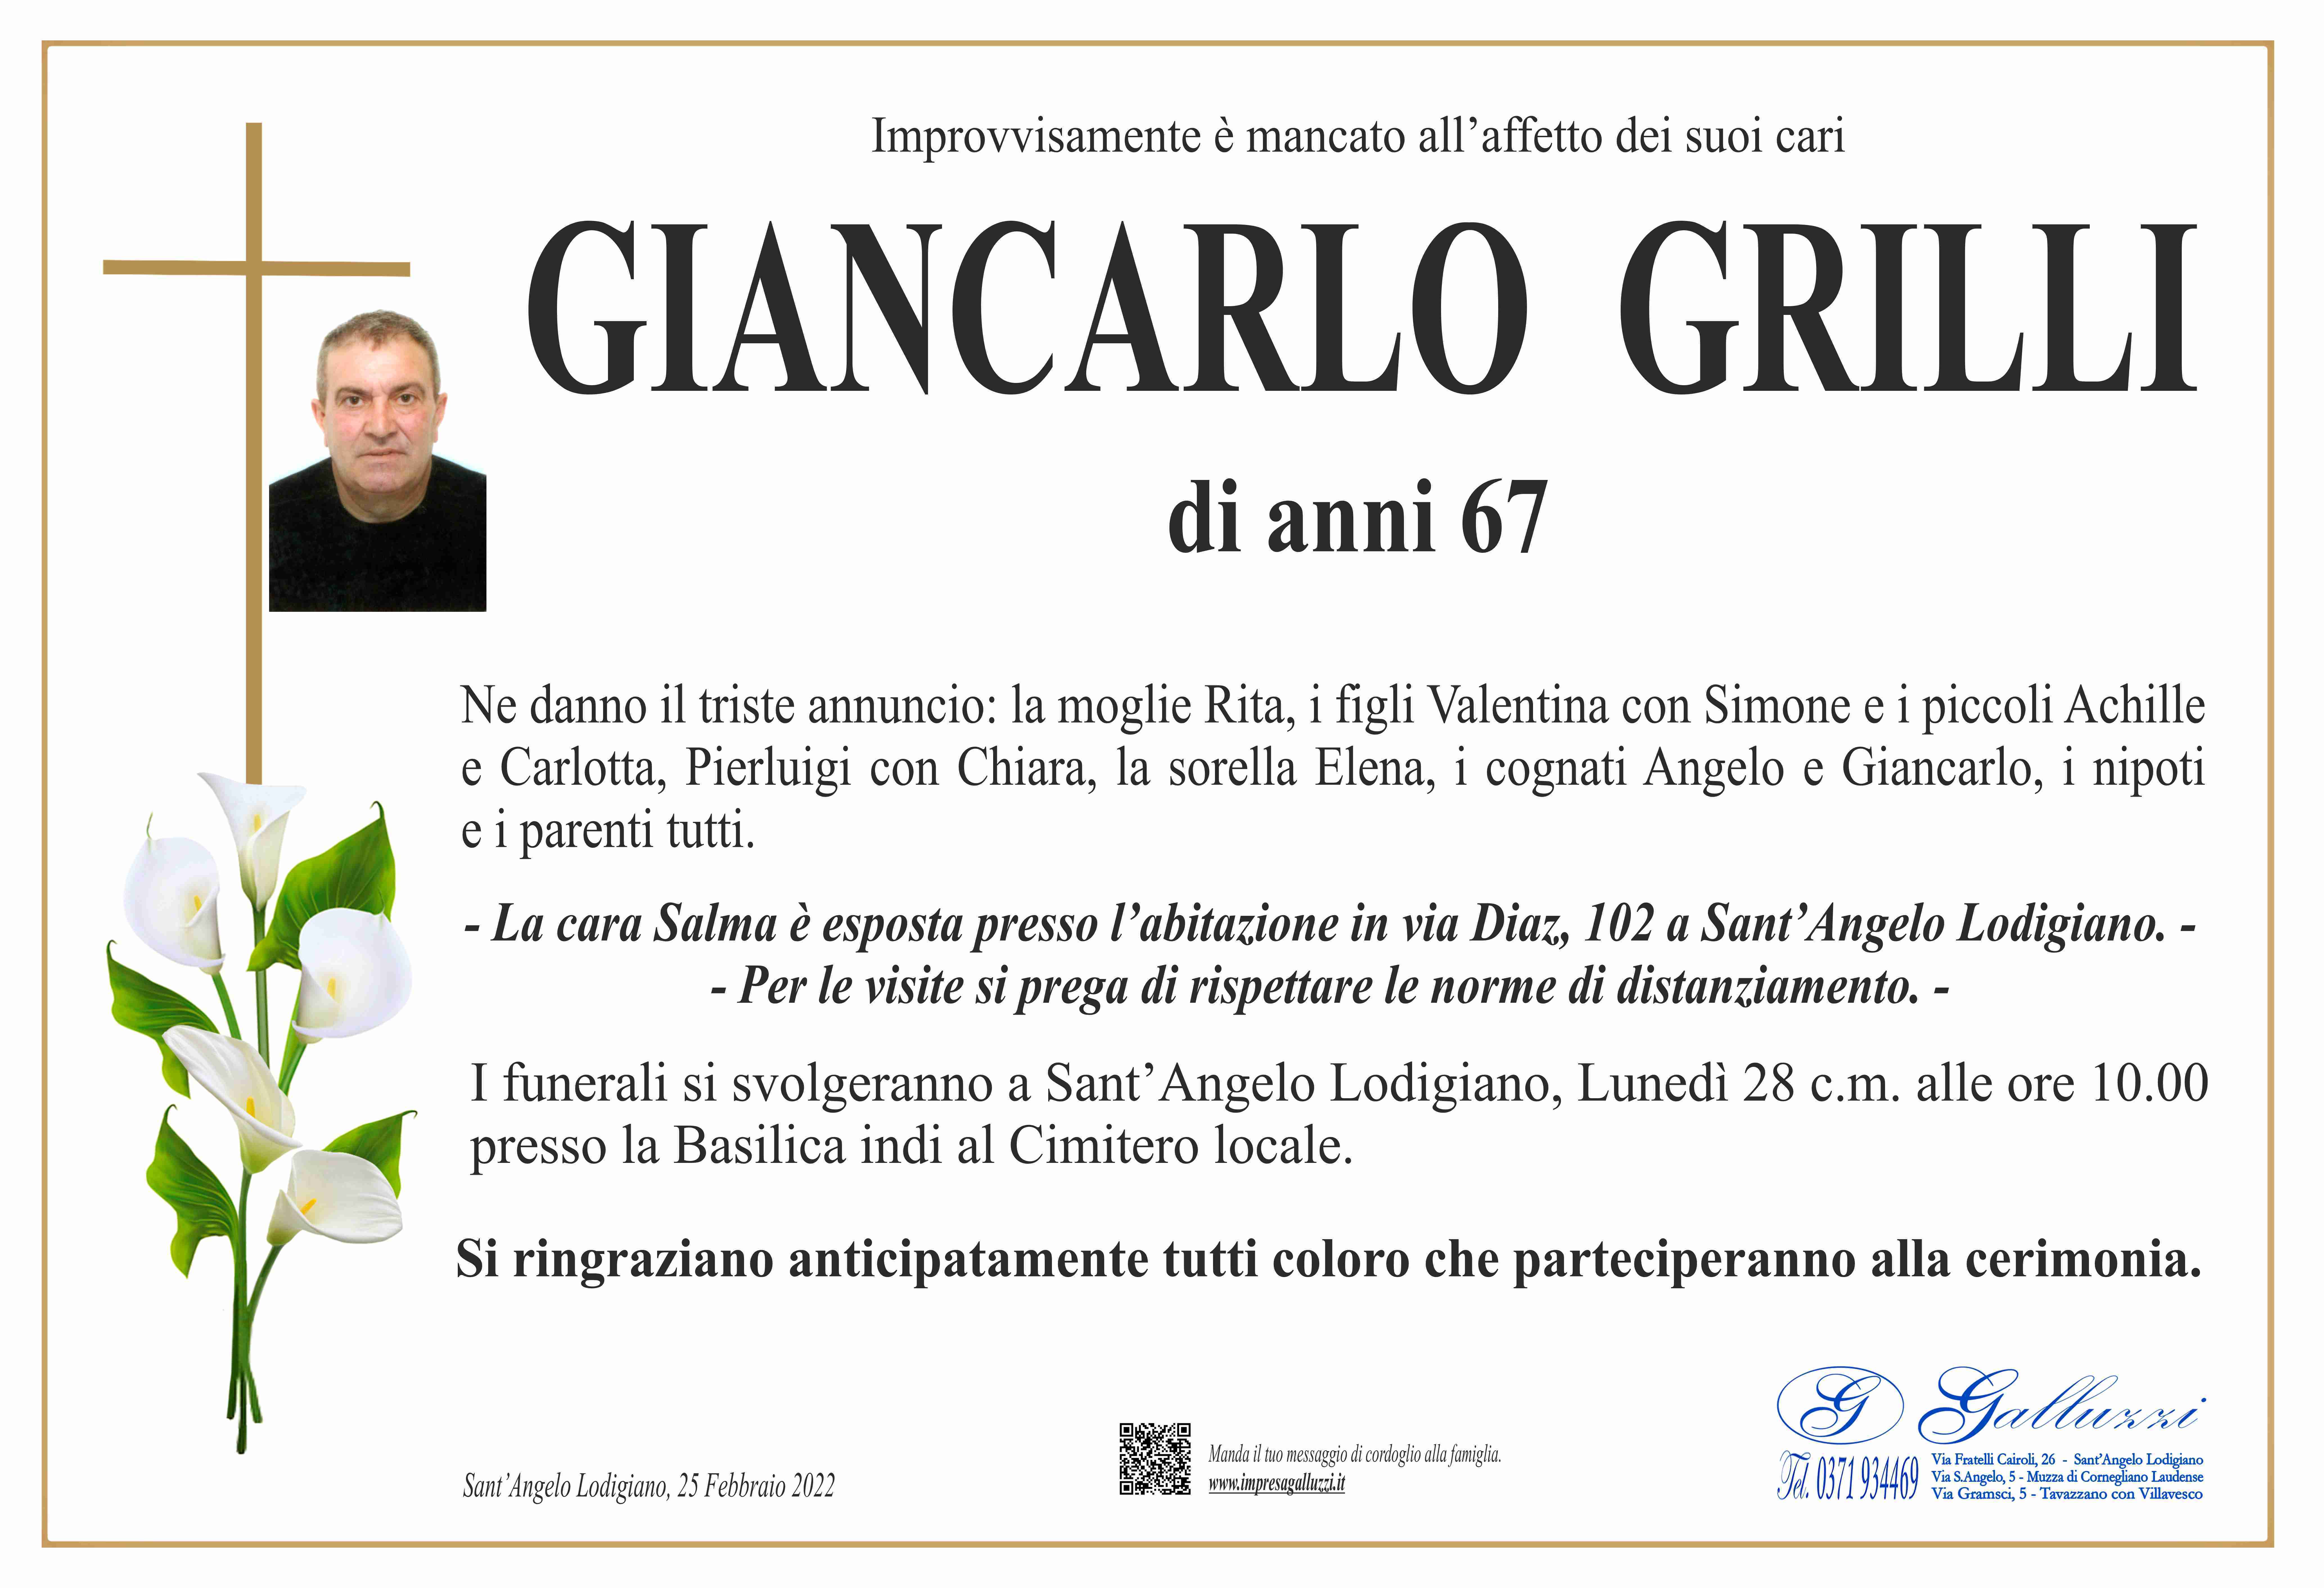 Giancarlo Grilli